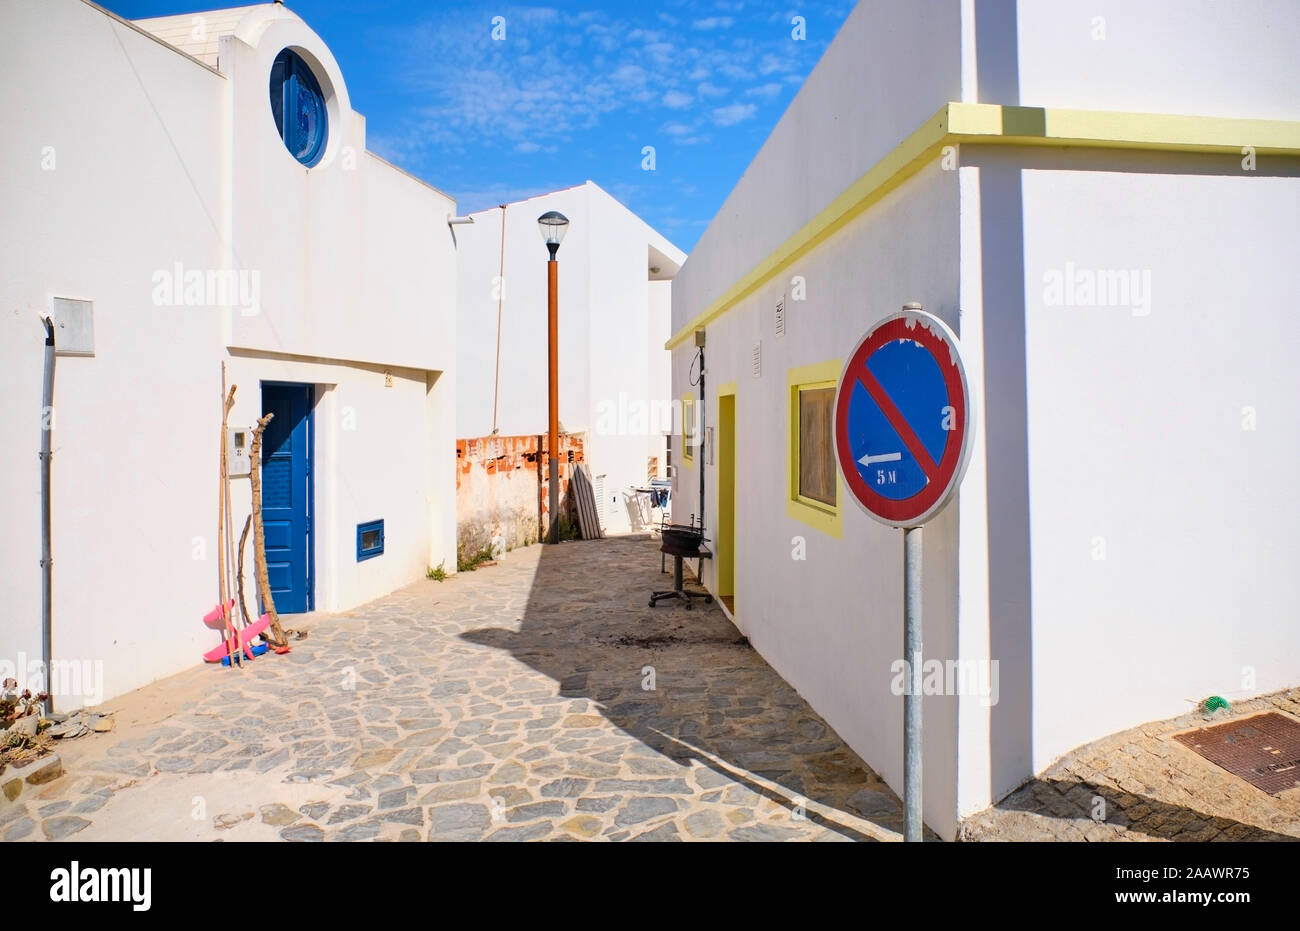 Portugal, Algarve, Arrifana, señales de carretera delante de adoquines vacía callejón entre casas blancas Foto de stock